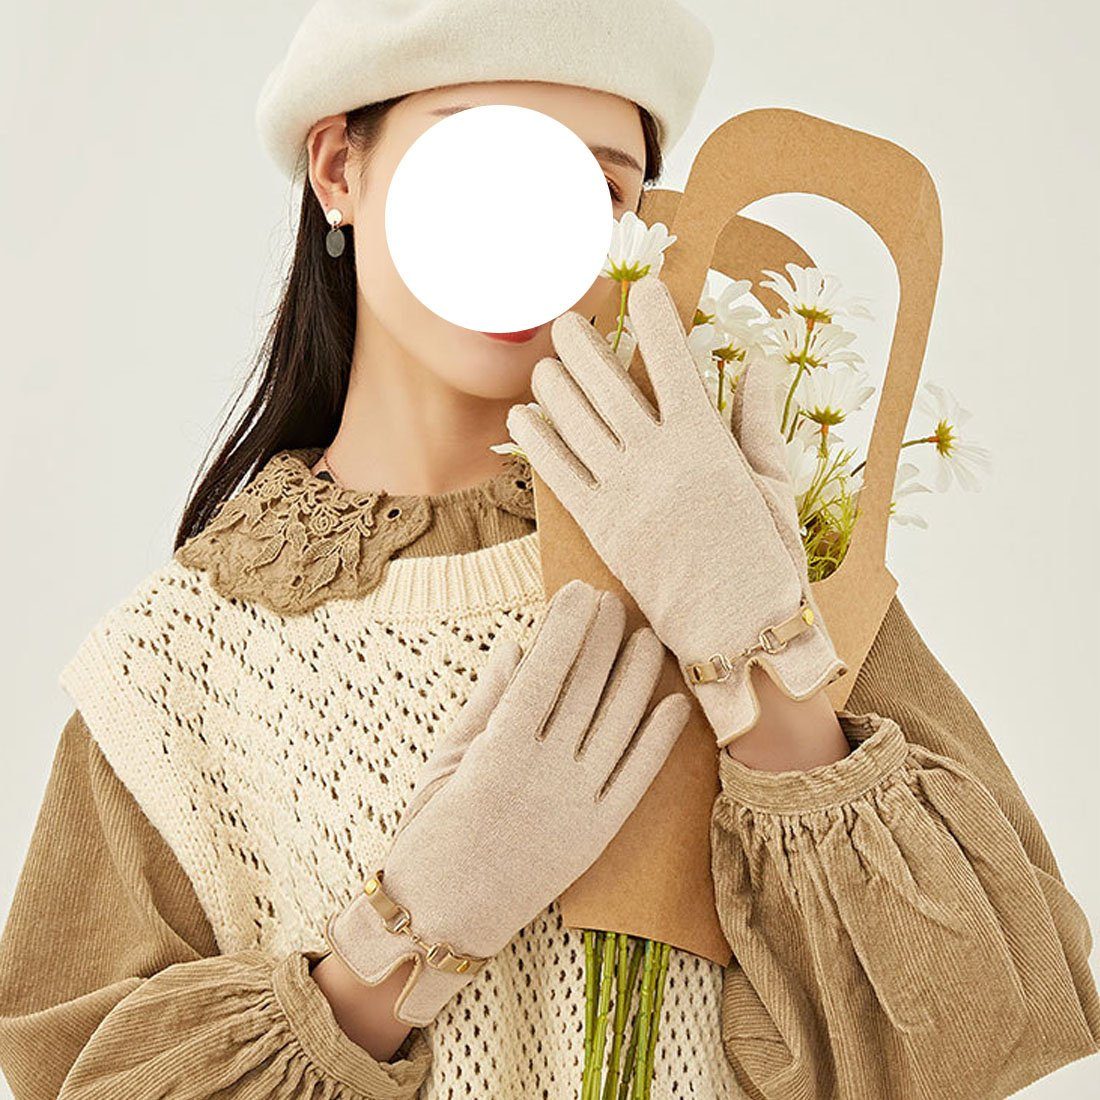 Warme Frauen Fleecehandschuhe khaki Cashmere Handschuhe Touchscreen, DÖRÖY Faux für Handschuhe mit